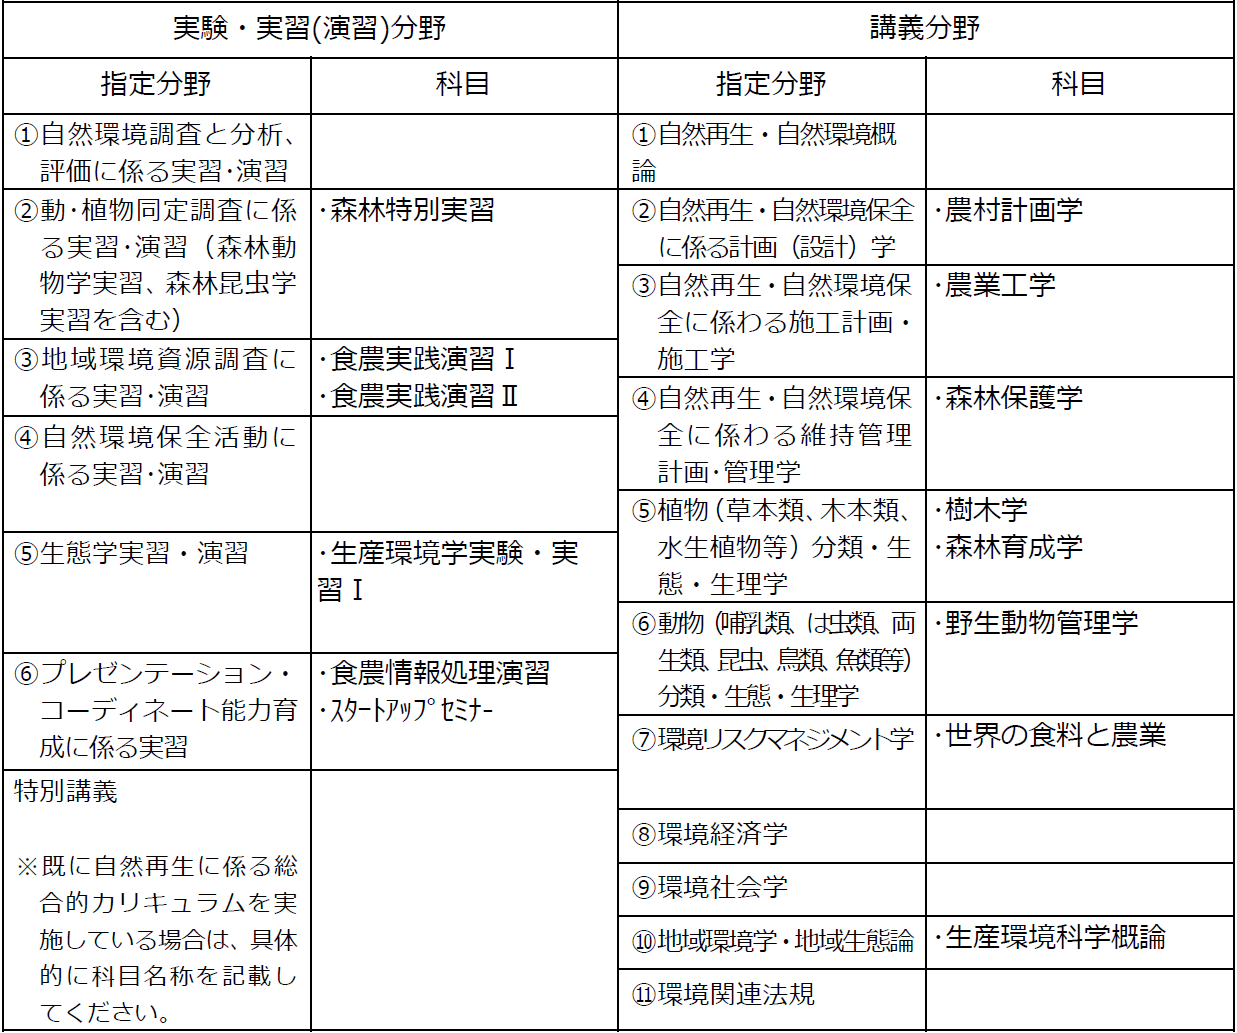 http://kyoumu.adb.fukushima-u.ac.jp/guide/2019/agri/Files/2021/03/702f544b1b5b2e77c1bdce0e99c273d3.png